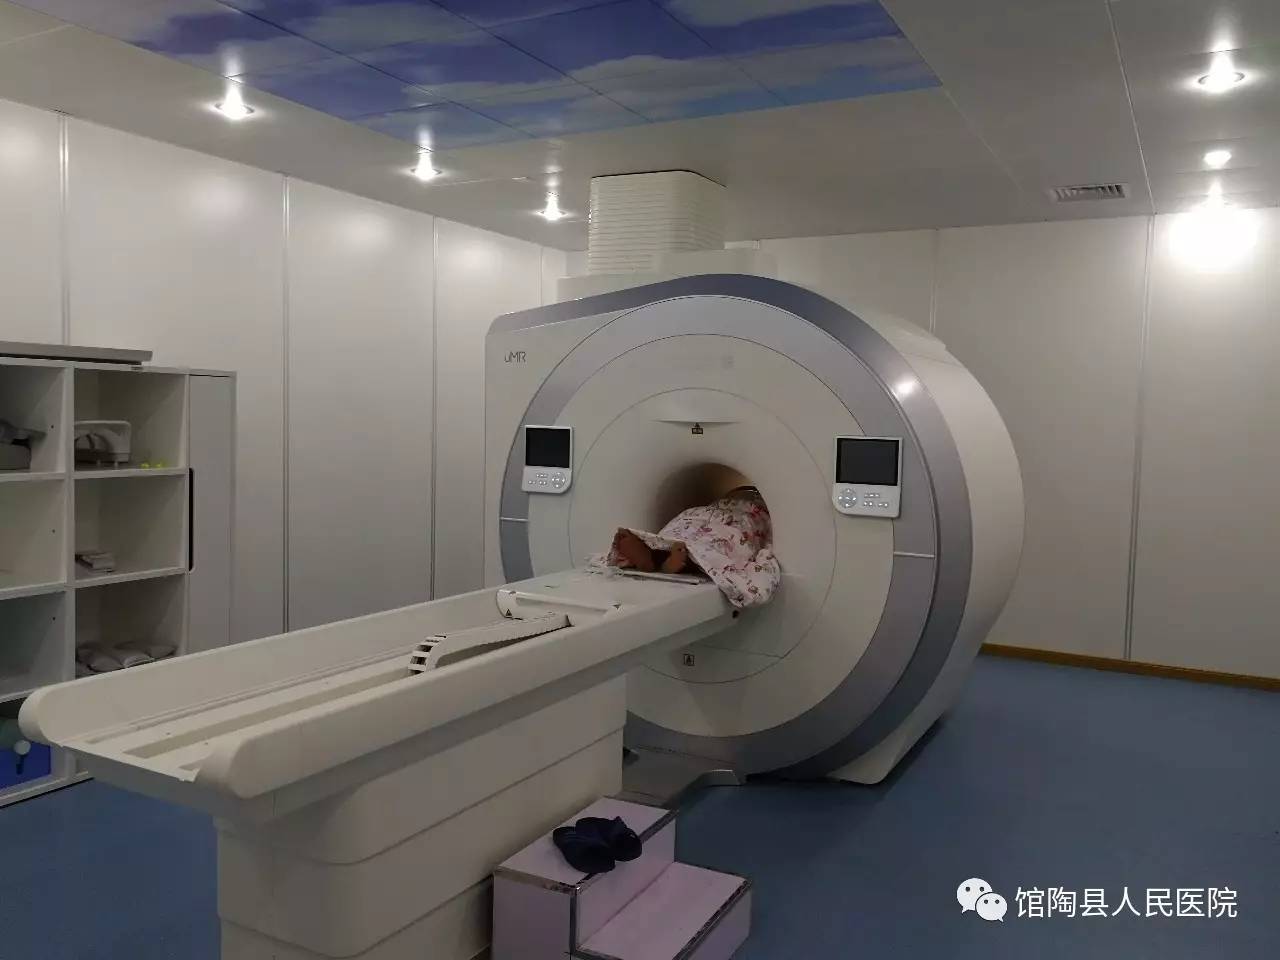 馆陶县人民医院高端1.5t mri(磁共振)正式投入启用,最新一代1.